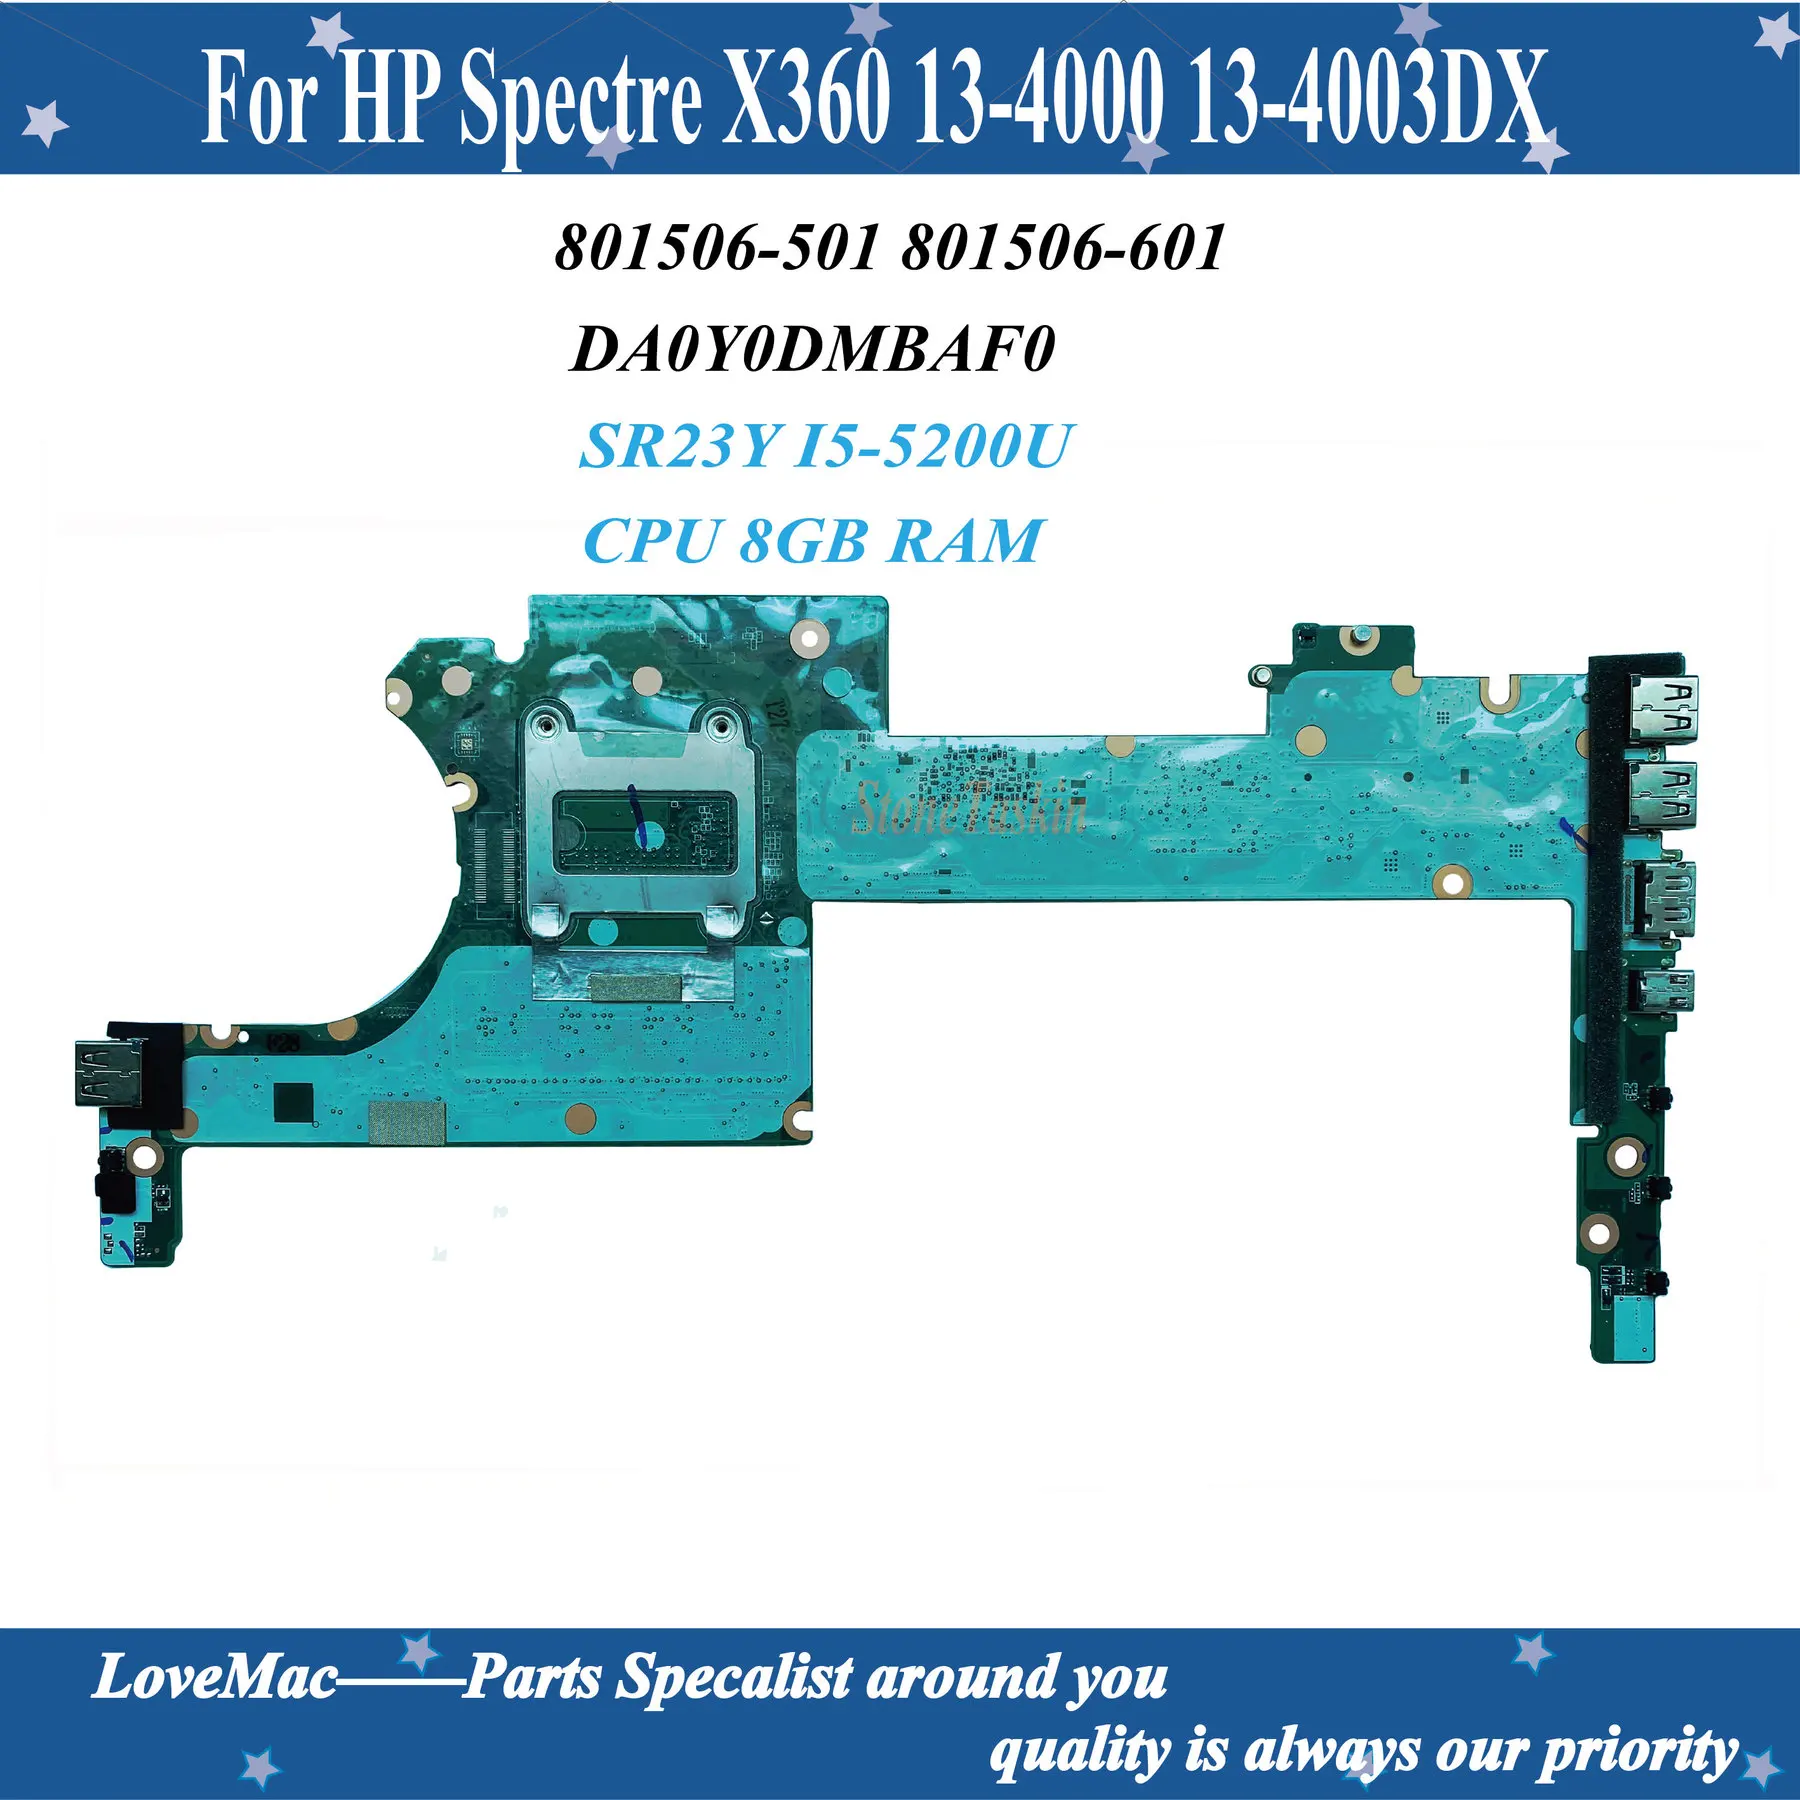 

801506-501 For HP Spectre X360 13-4000 13-4003DX Laptop Motherboard 801506-601 DA0Y0DMBAF0 SR23Y I5-5200U 8GB RAM 100% tested